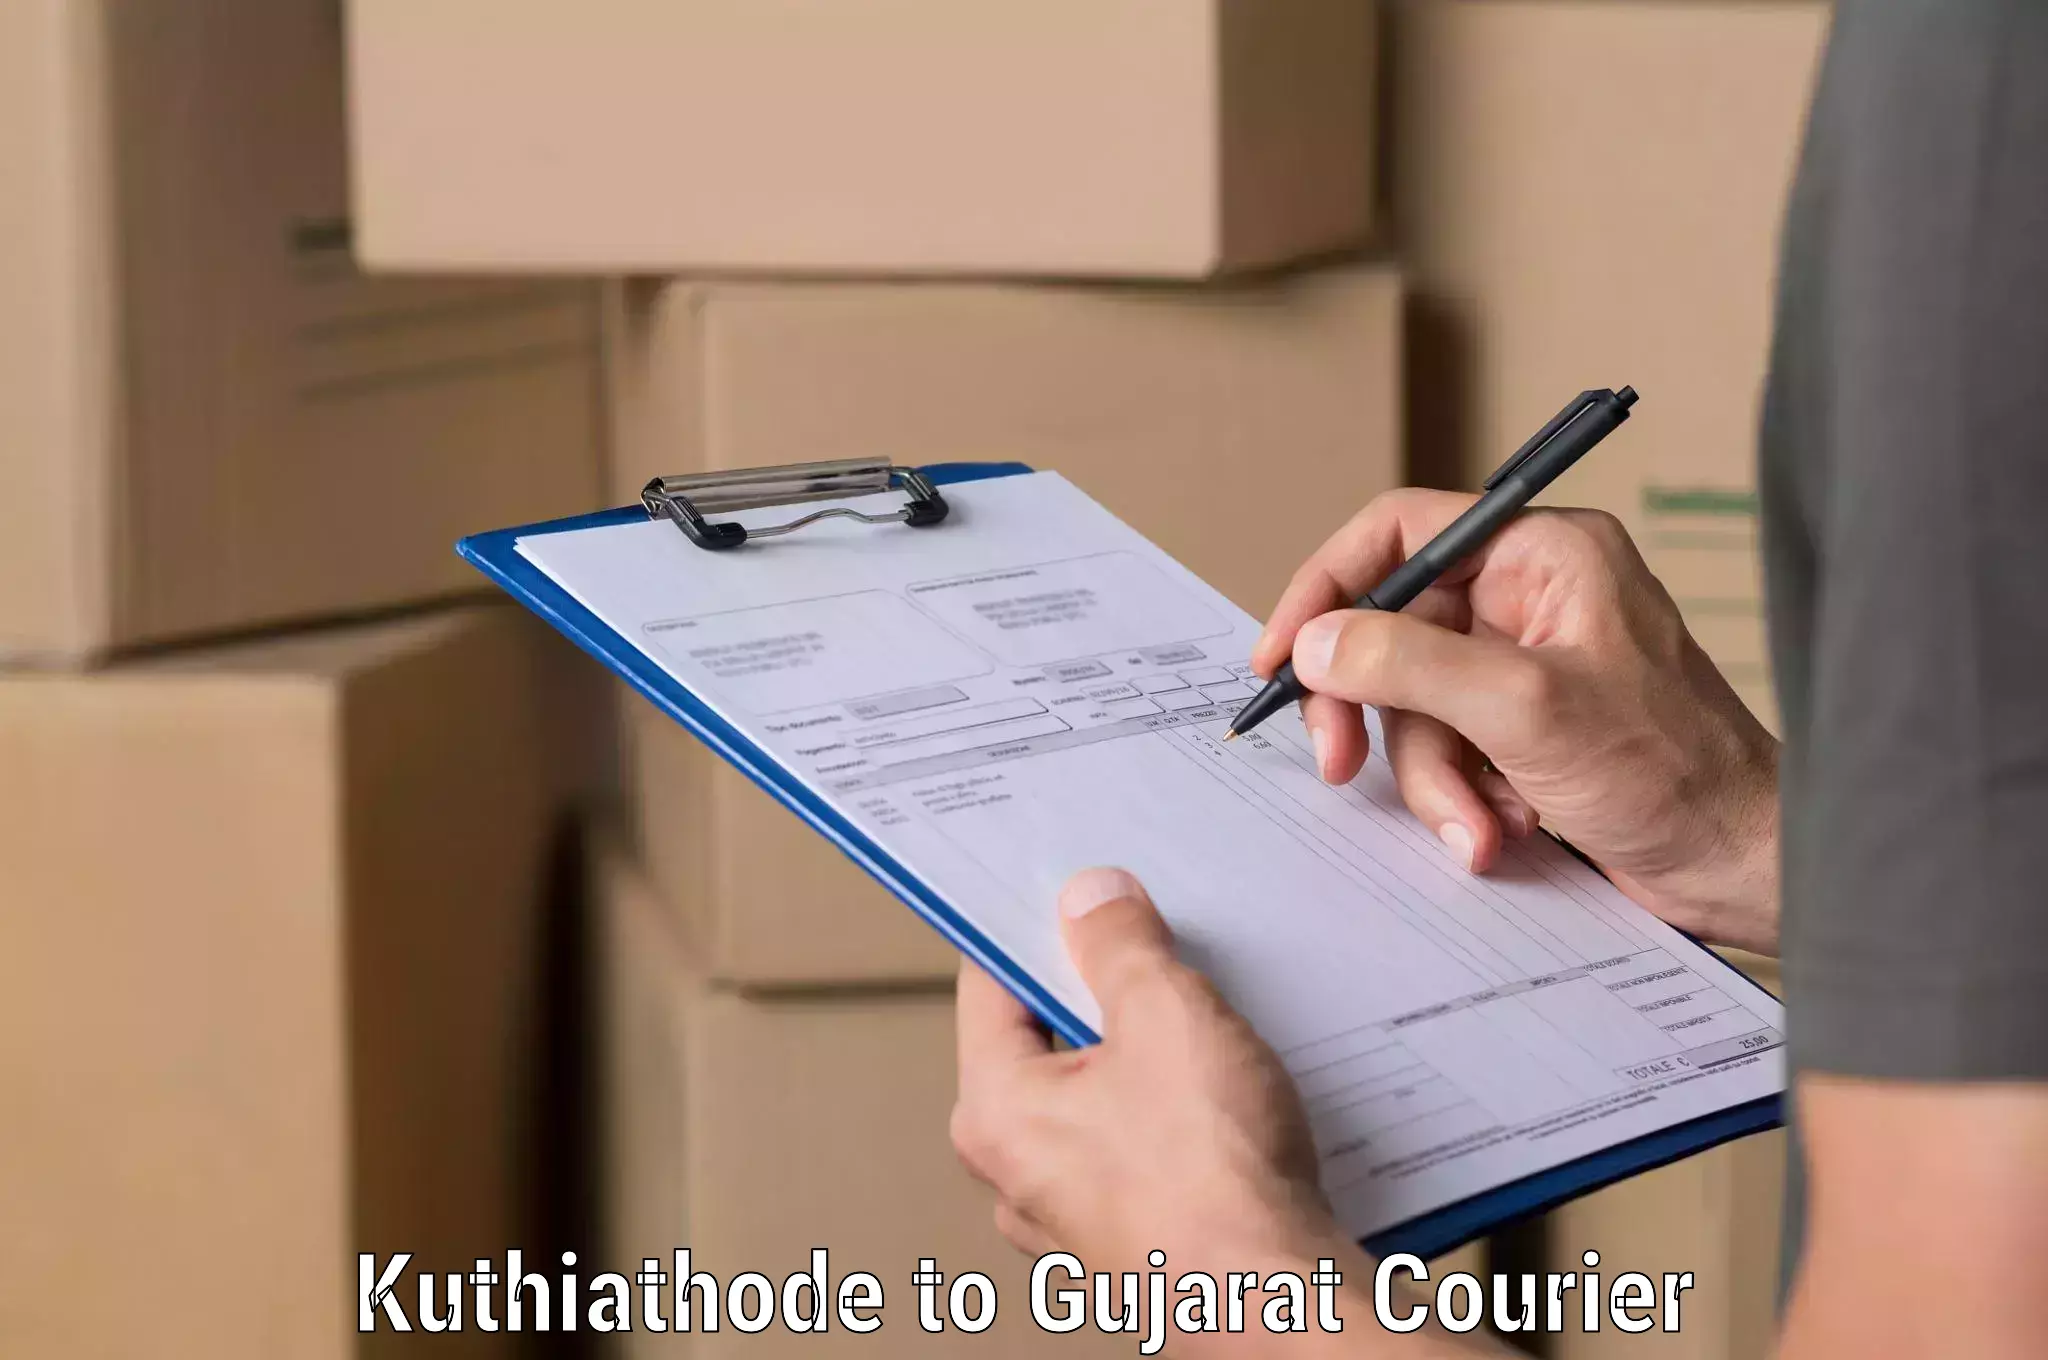 Urgent courier needs Kuthiathode to Ahmedabad